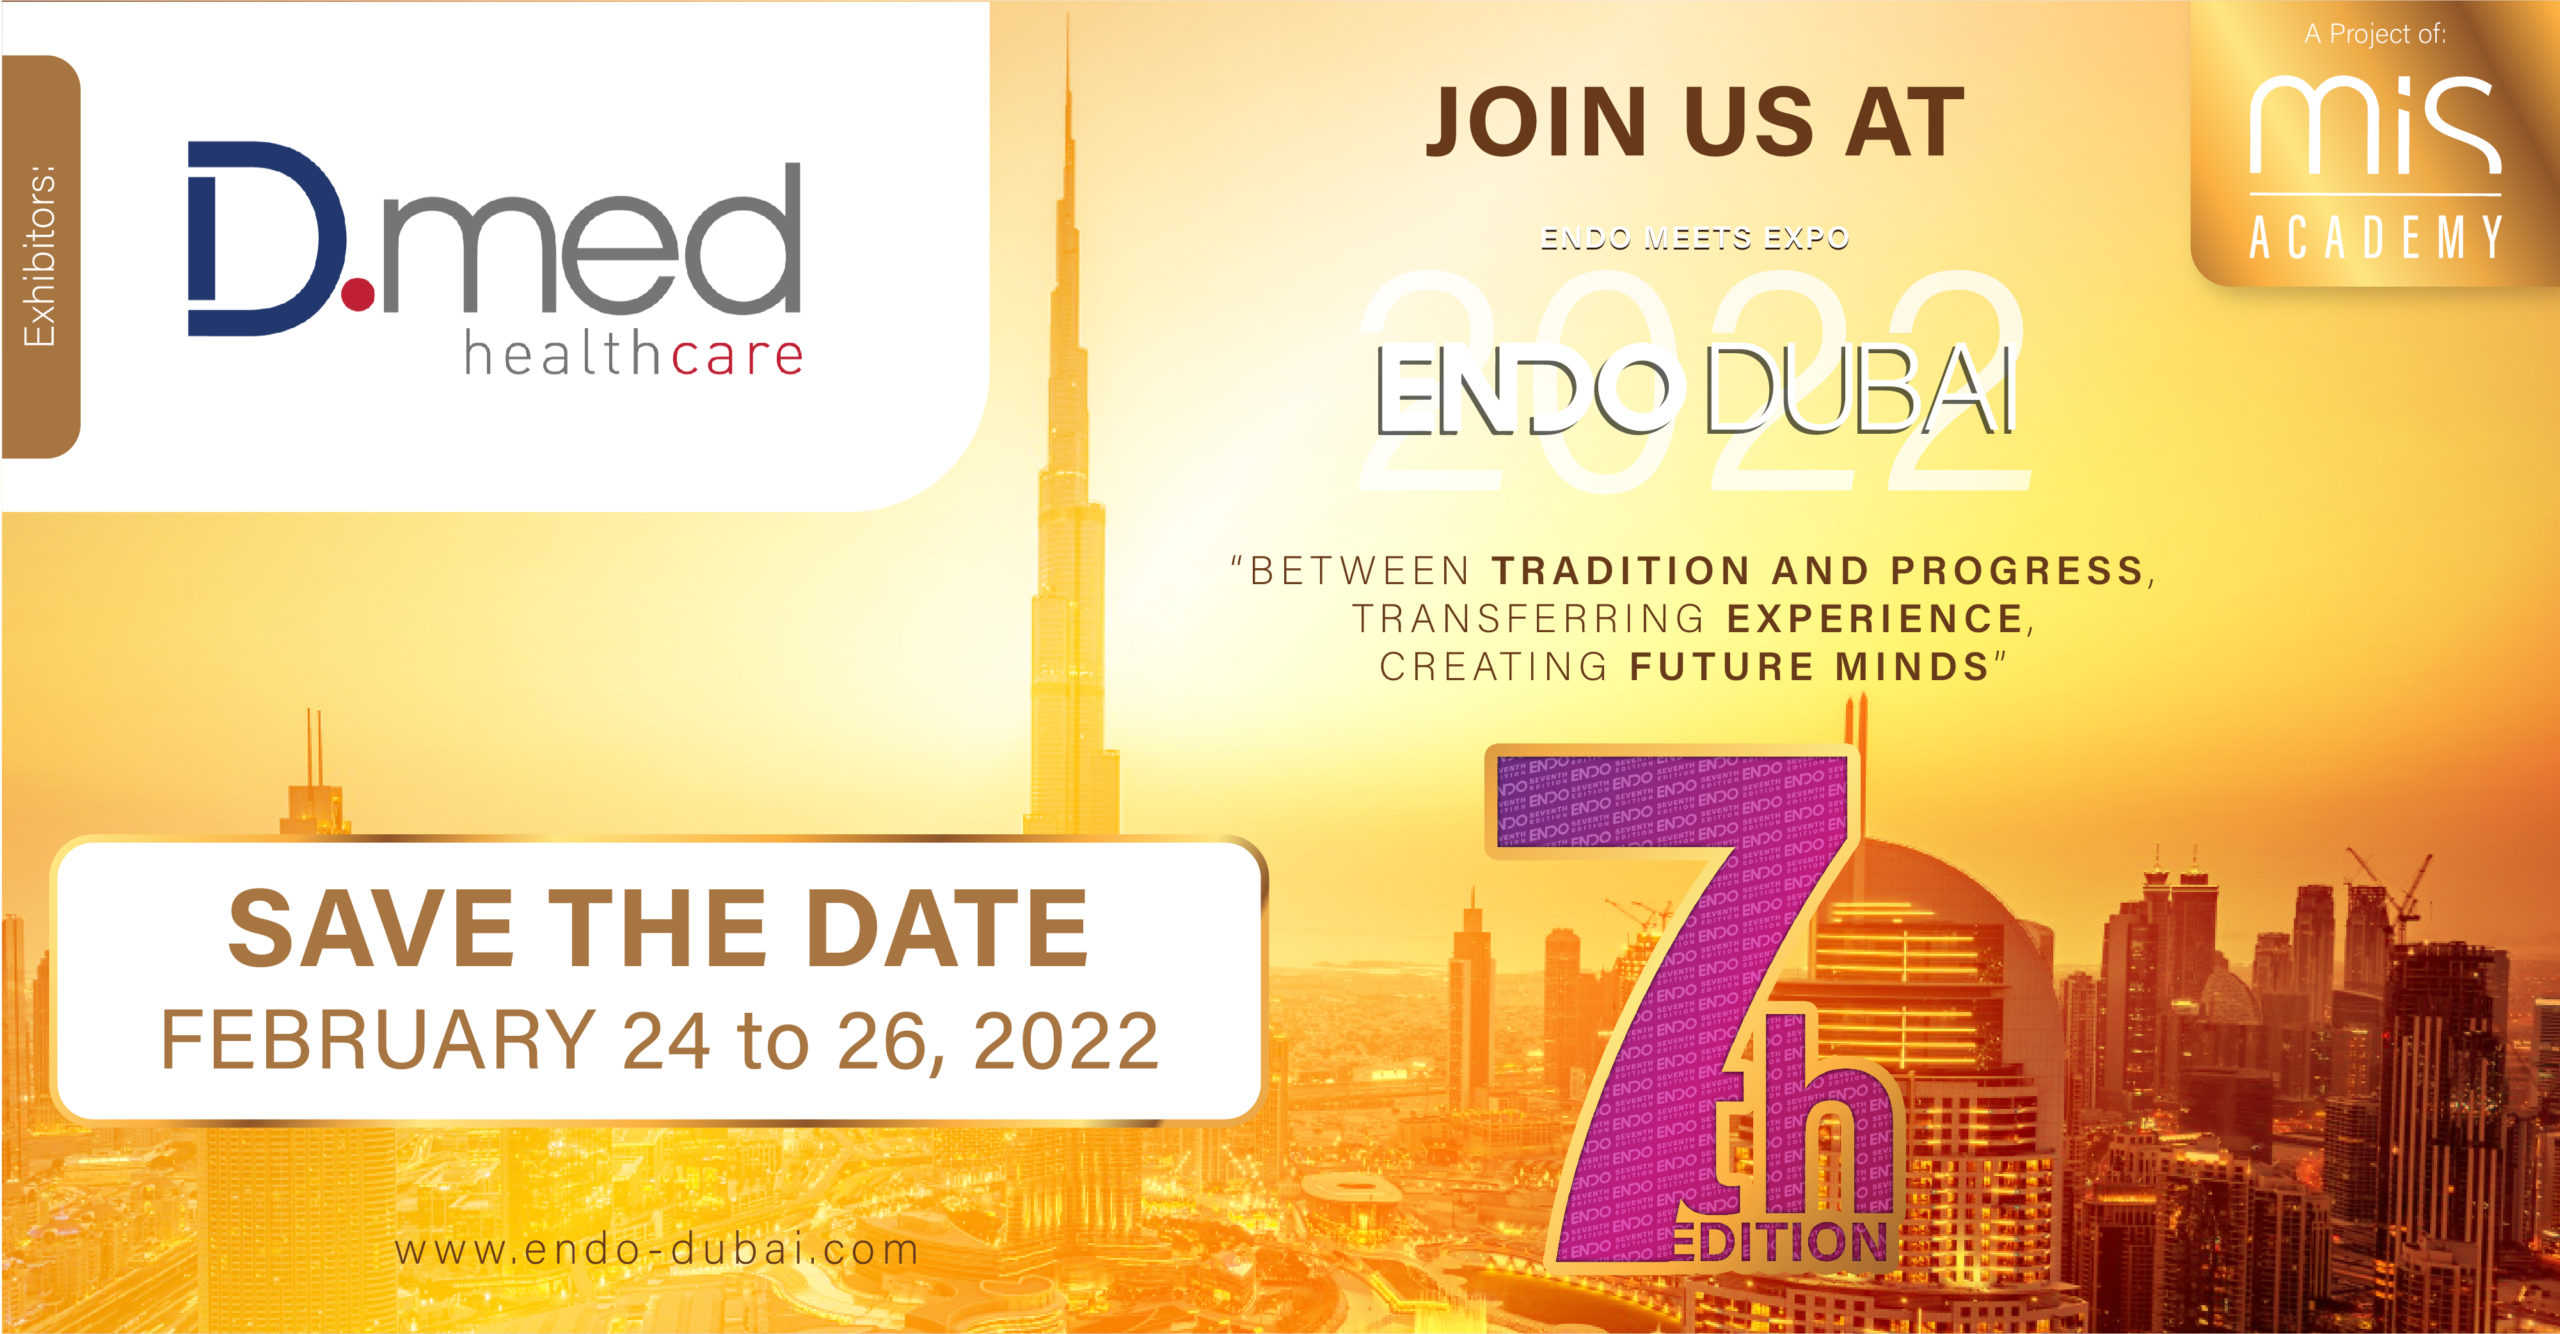 Meet us at ENDO Dubai 2022